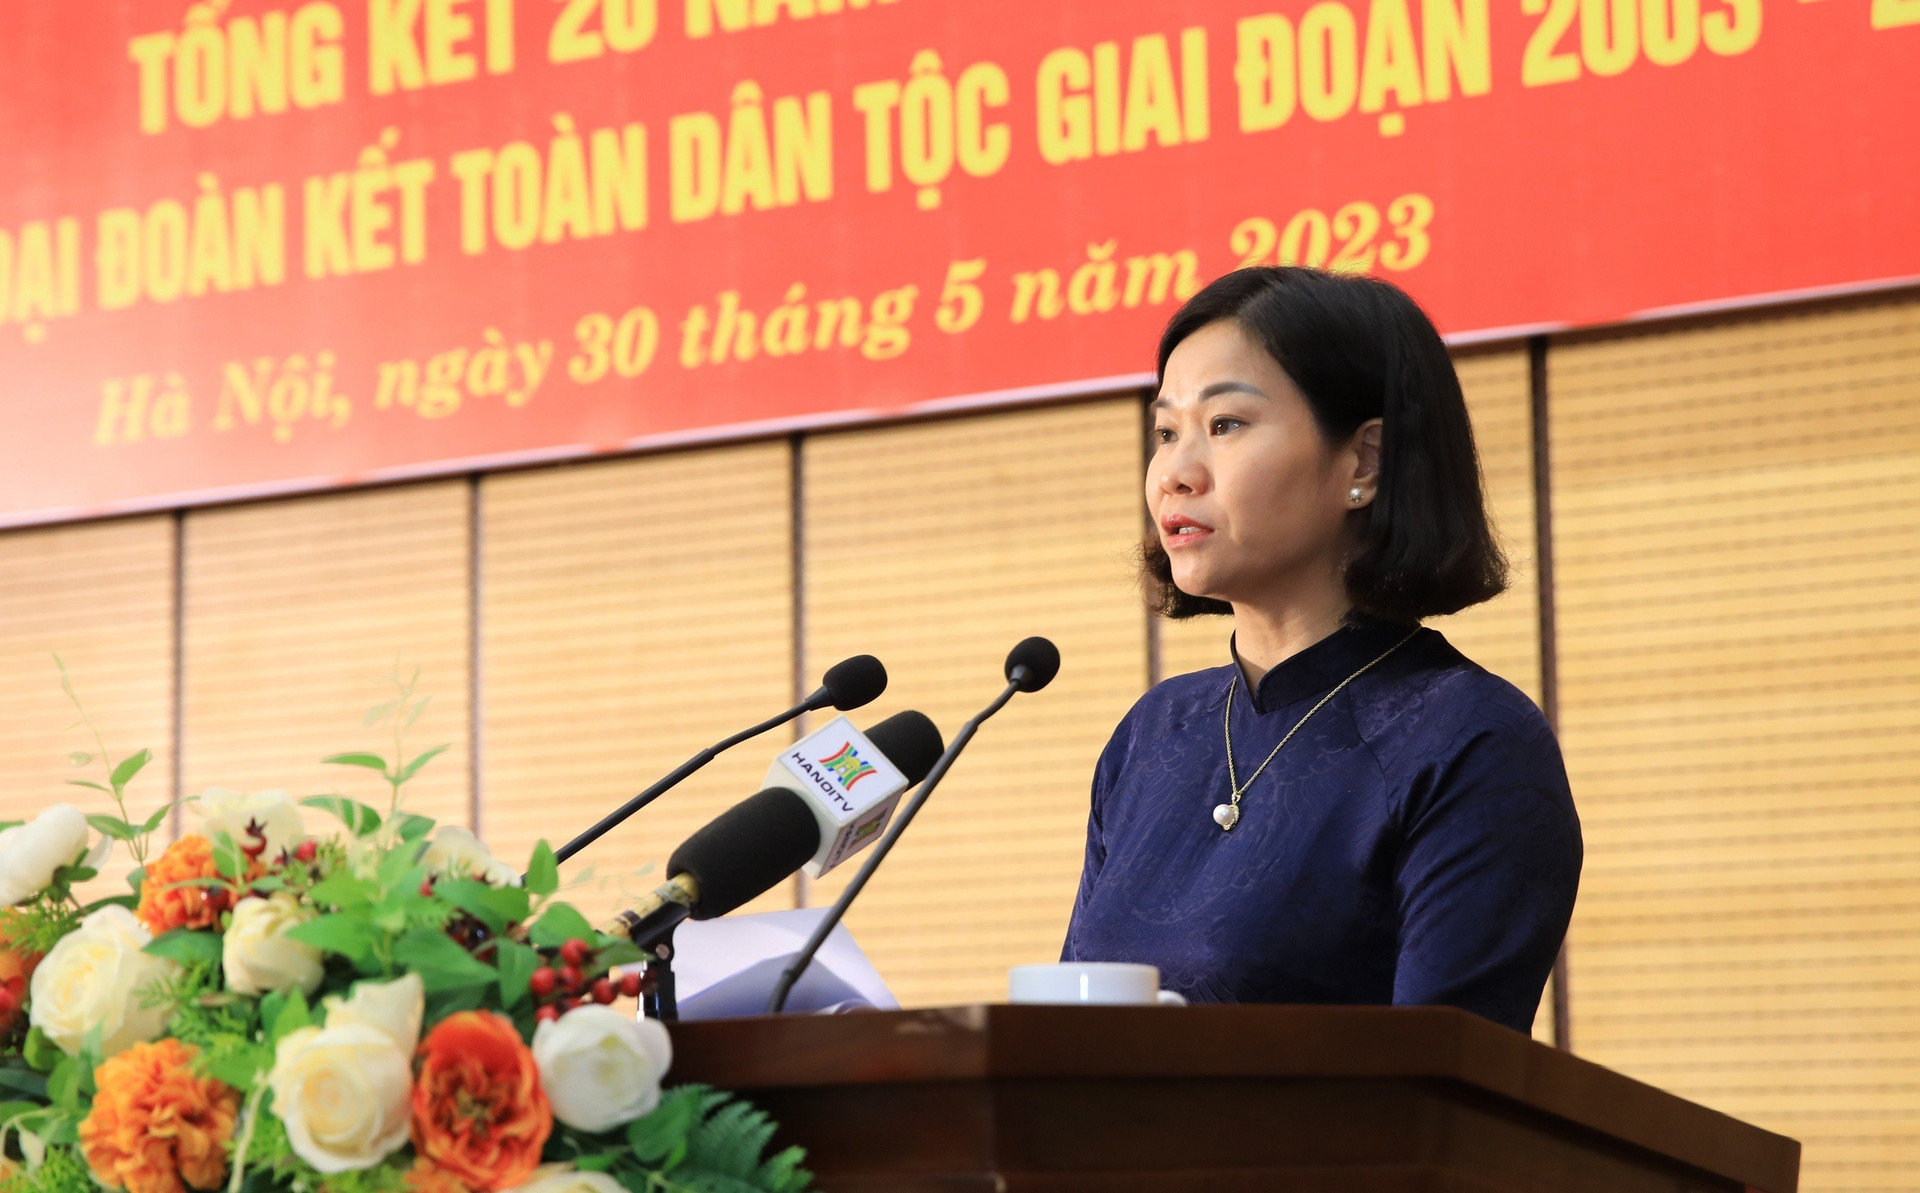 Bà Nguyễn Thị Tuyến, Phó Bí thư Thường trực Thành ủy Hà Nội phát biểu tại hội nghị.